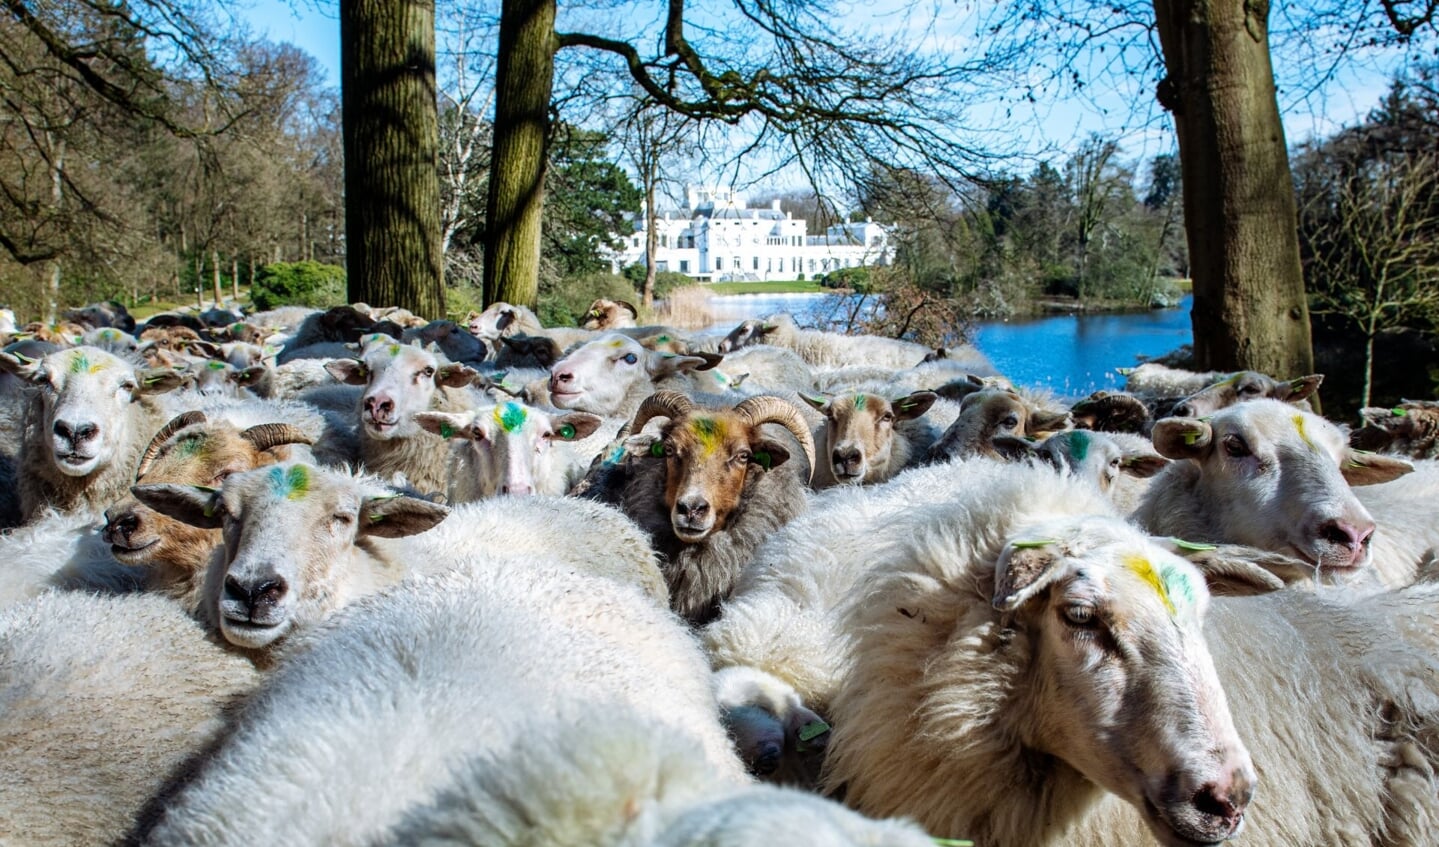 ‘In het bos willen we de komende jaren zoveel mogelijk natuurwaarden realiseren en het beweiden met schapen heeft hierop een heel positieve invloed’; aldus Frans van der Avert, Directeur Paleis Soestdijk. 